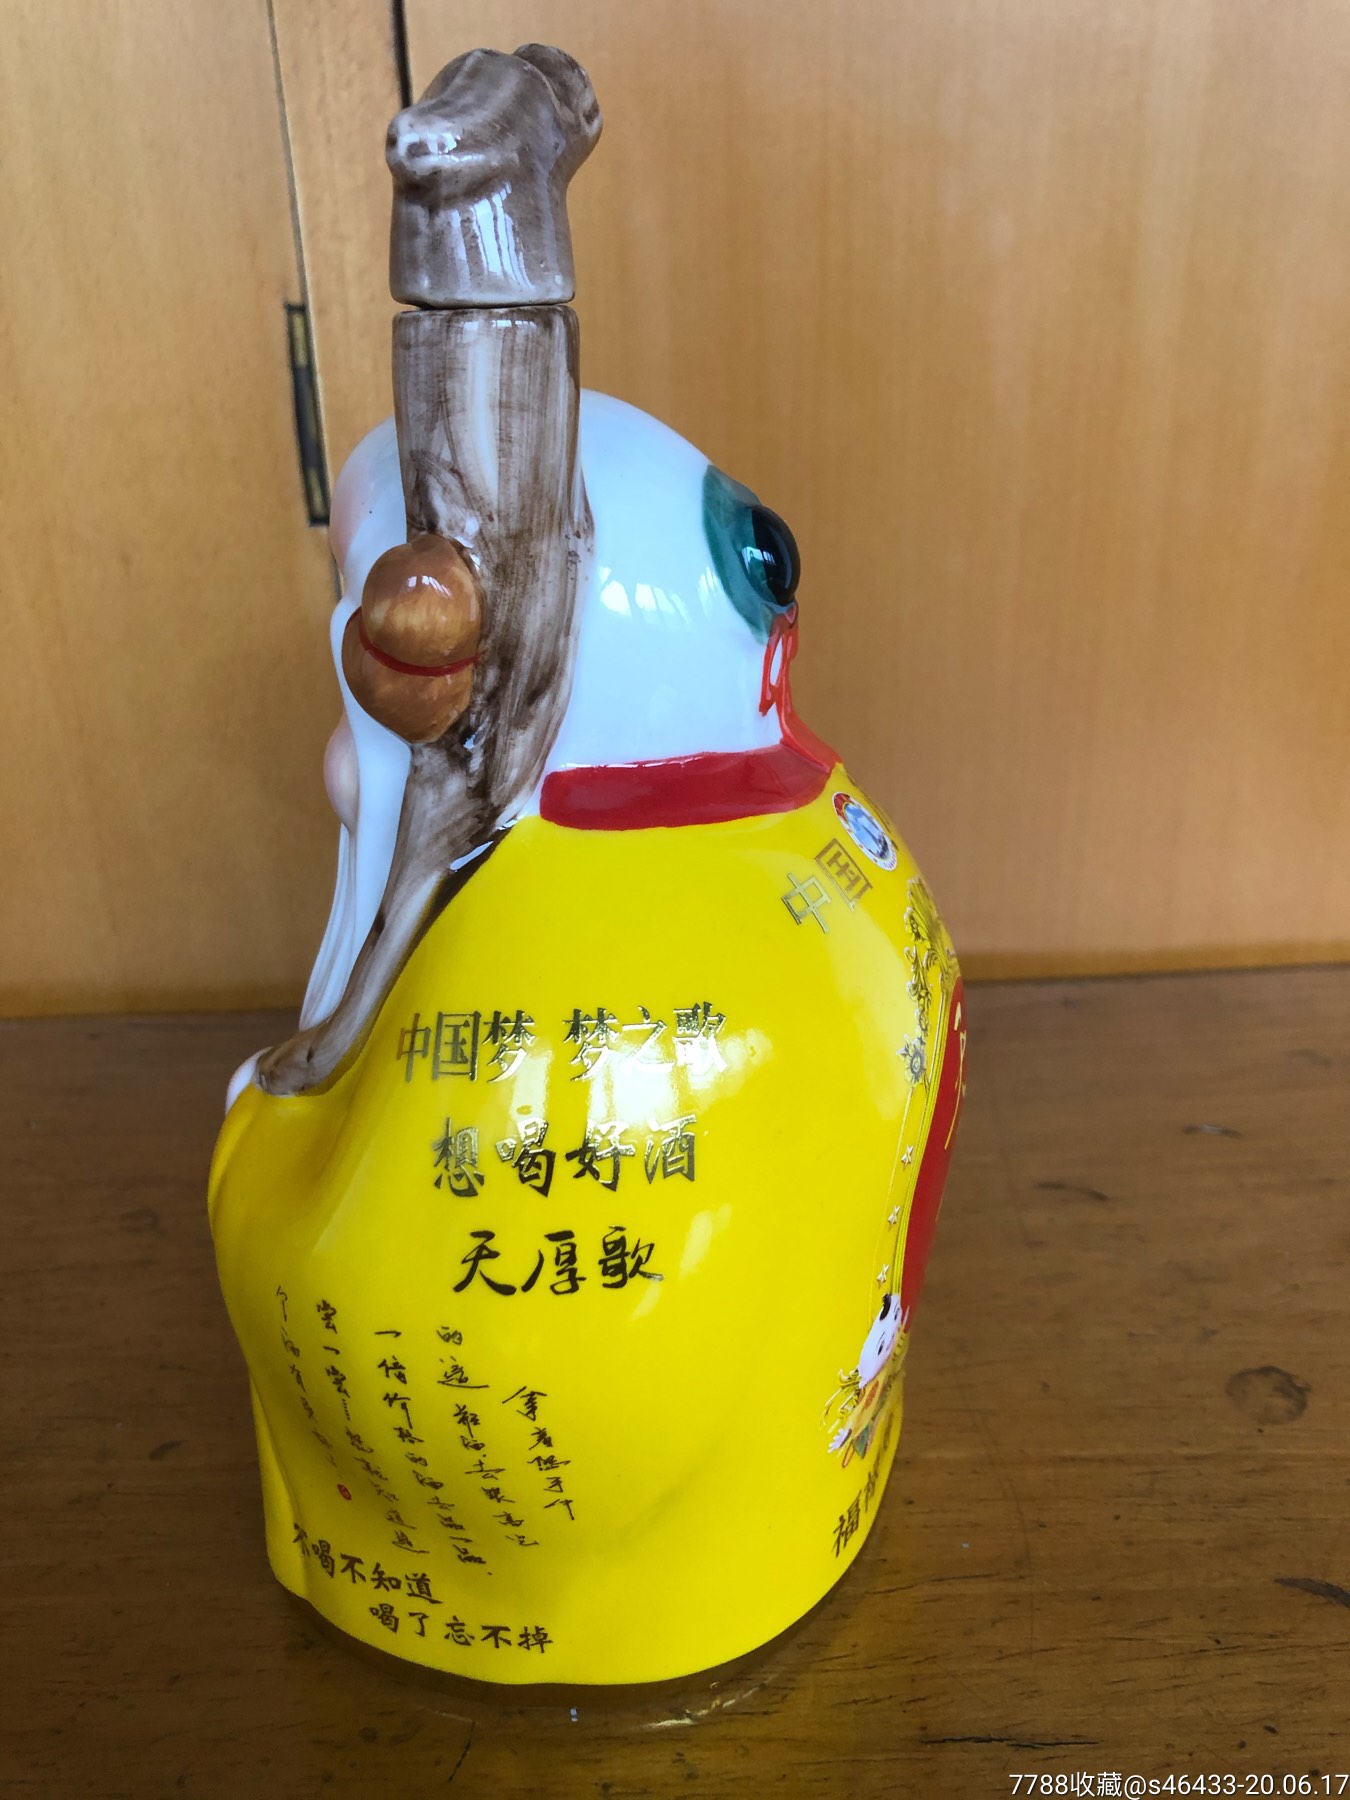 酒瓶收藏,寿星酒,陶瓷艺术酒瓶.1斤